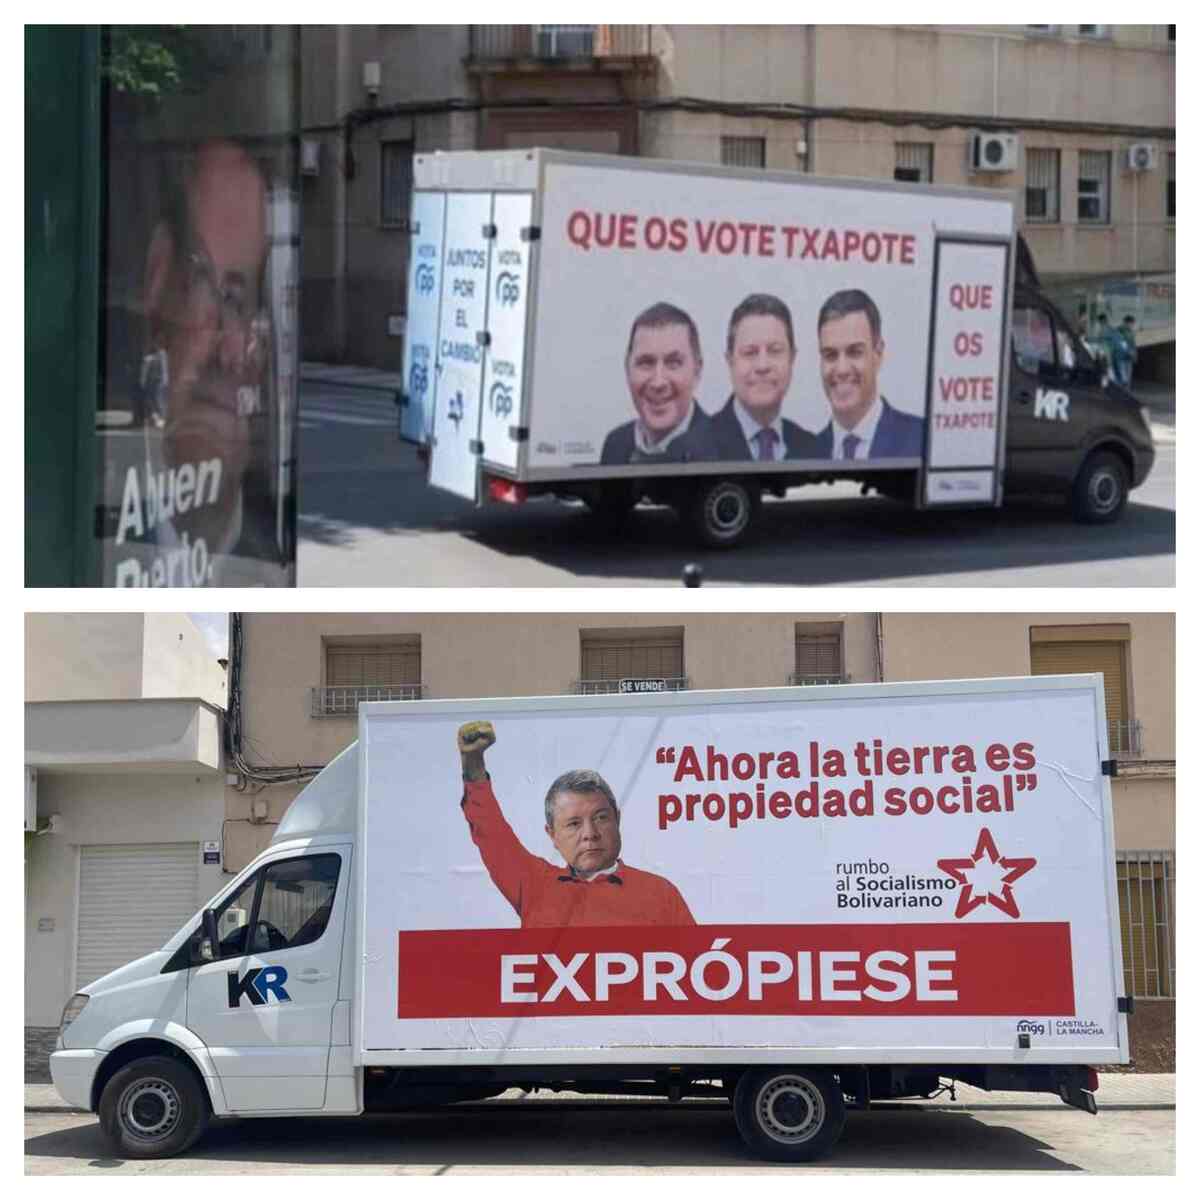 "furgonetas de la vergüenza"